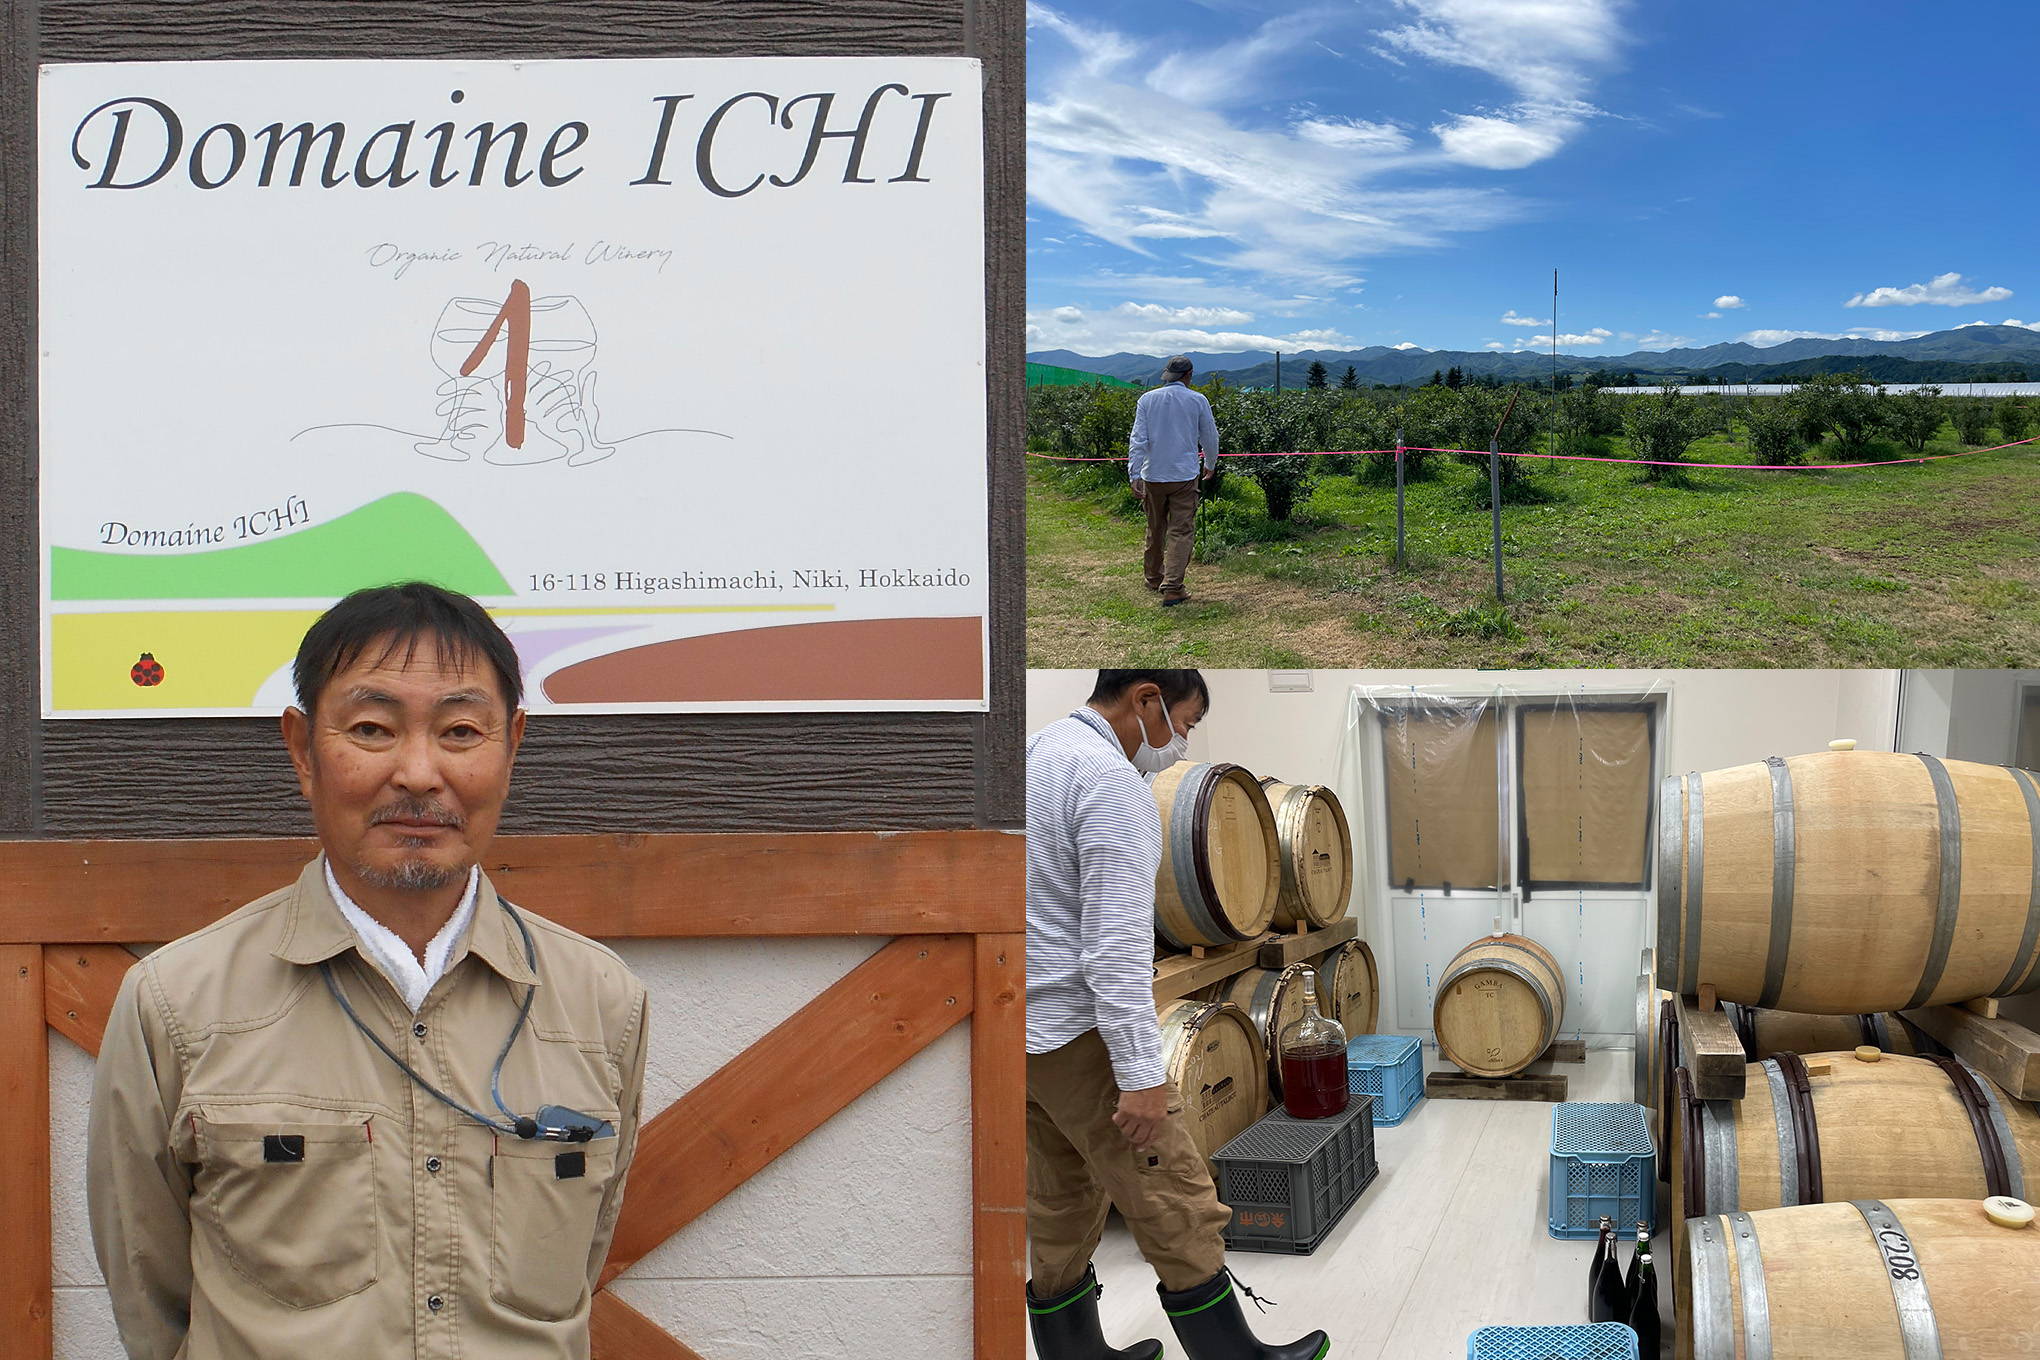 オーガニックワインの先駆者、上田一郎(うえだいちろう)さん。新設した話題のワイナリー『ドメーヌ・イチ』は、ファーストヴィンテージから即完売が続出。